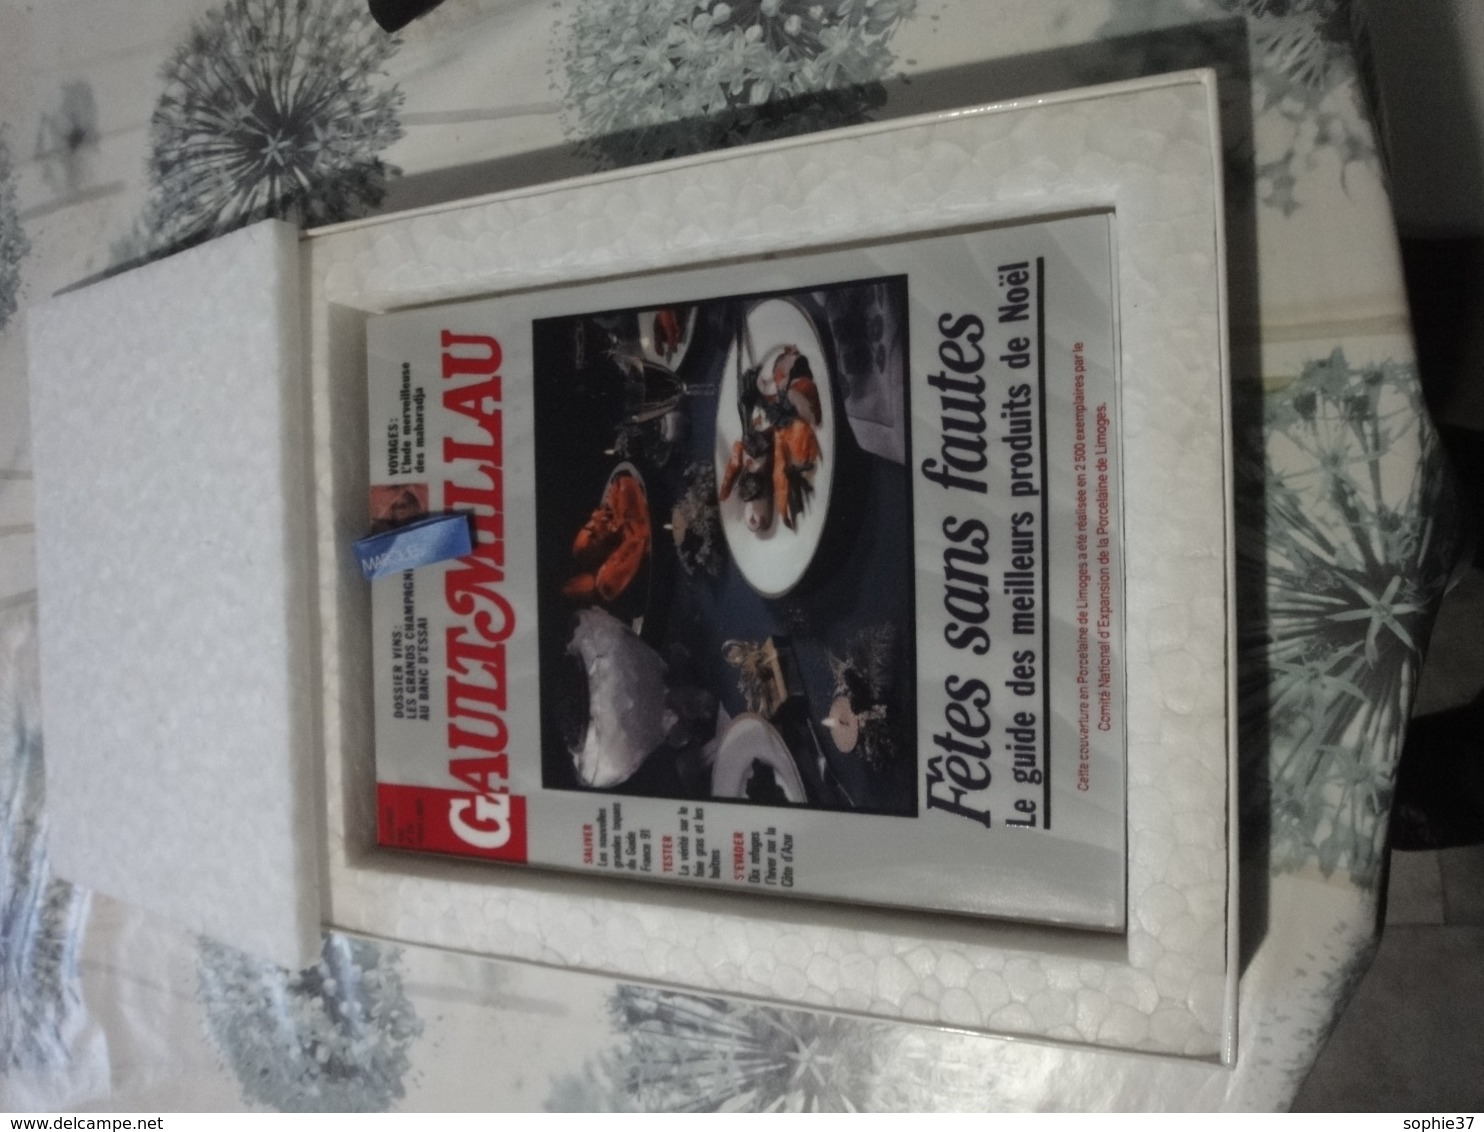 N° Spécial "Gault Miliau" Avec Couverture En Porcelaine De Limoges édité En Novembre 1990 - Cooking & Wines